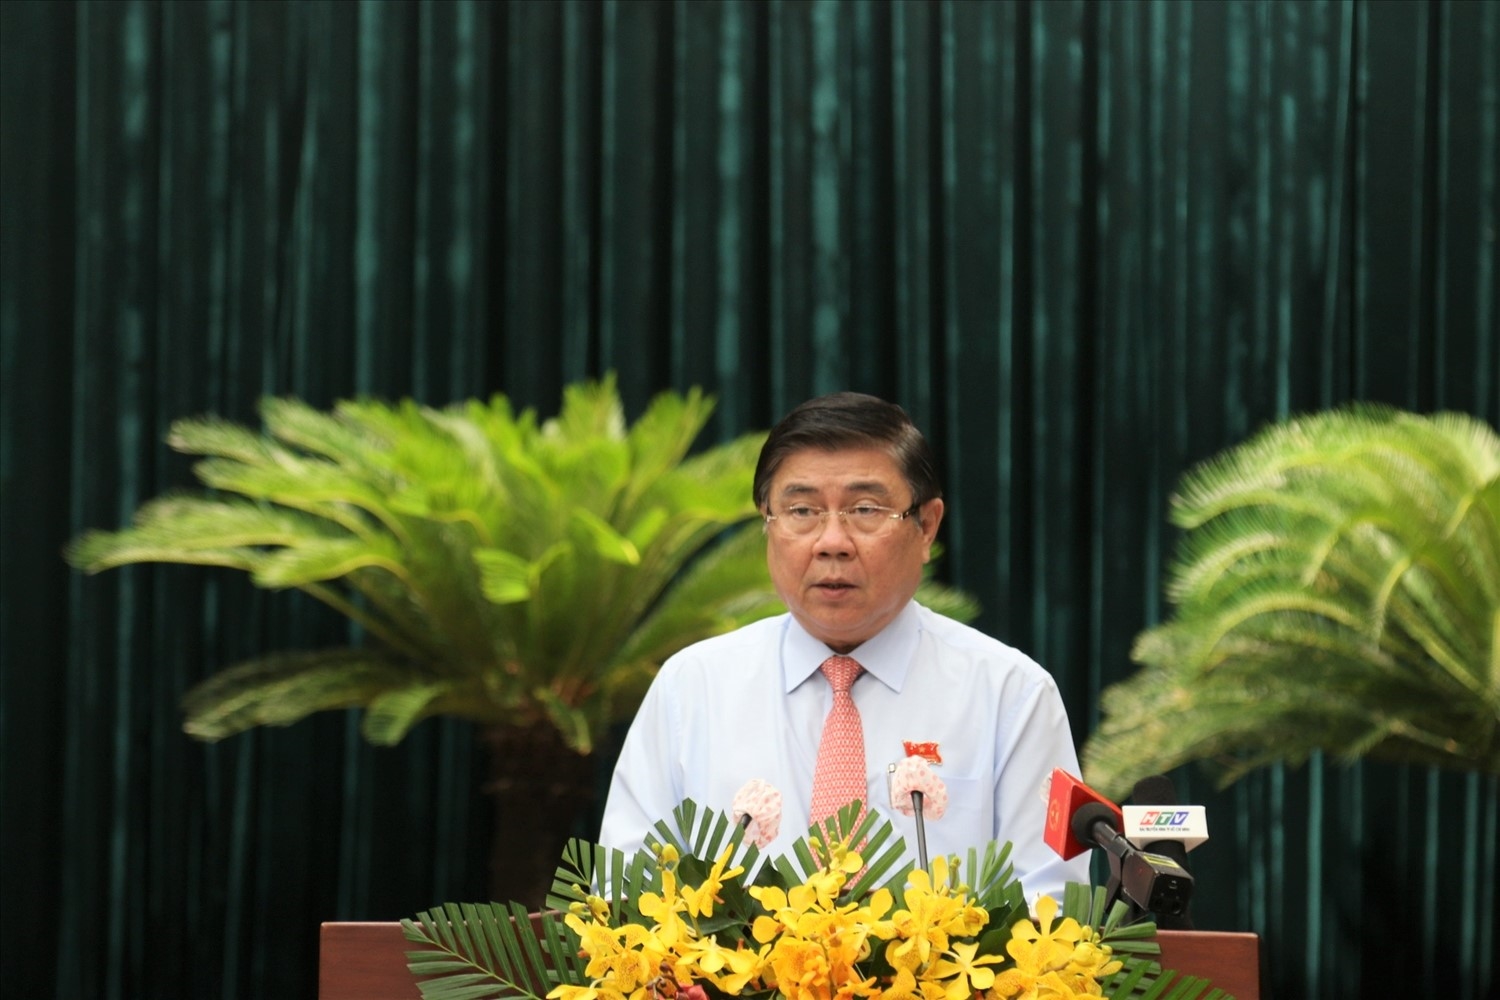 Chủ tịch UBND TP. Hồ Chí Minh nhiệm kỳ 2021-2026 Nguyễn Thành Phong trình bày chương trình hành động tại kỳ họp